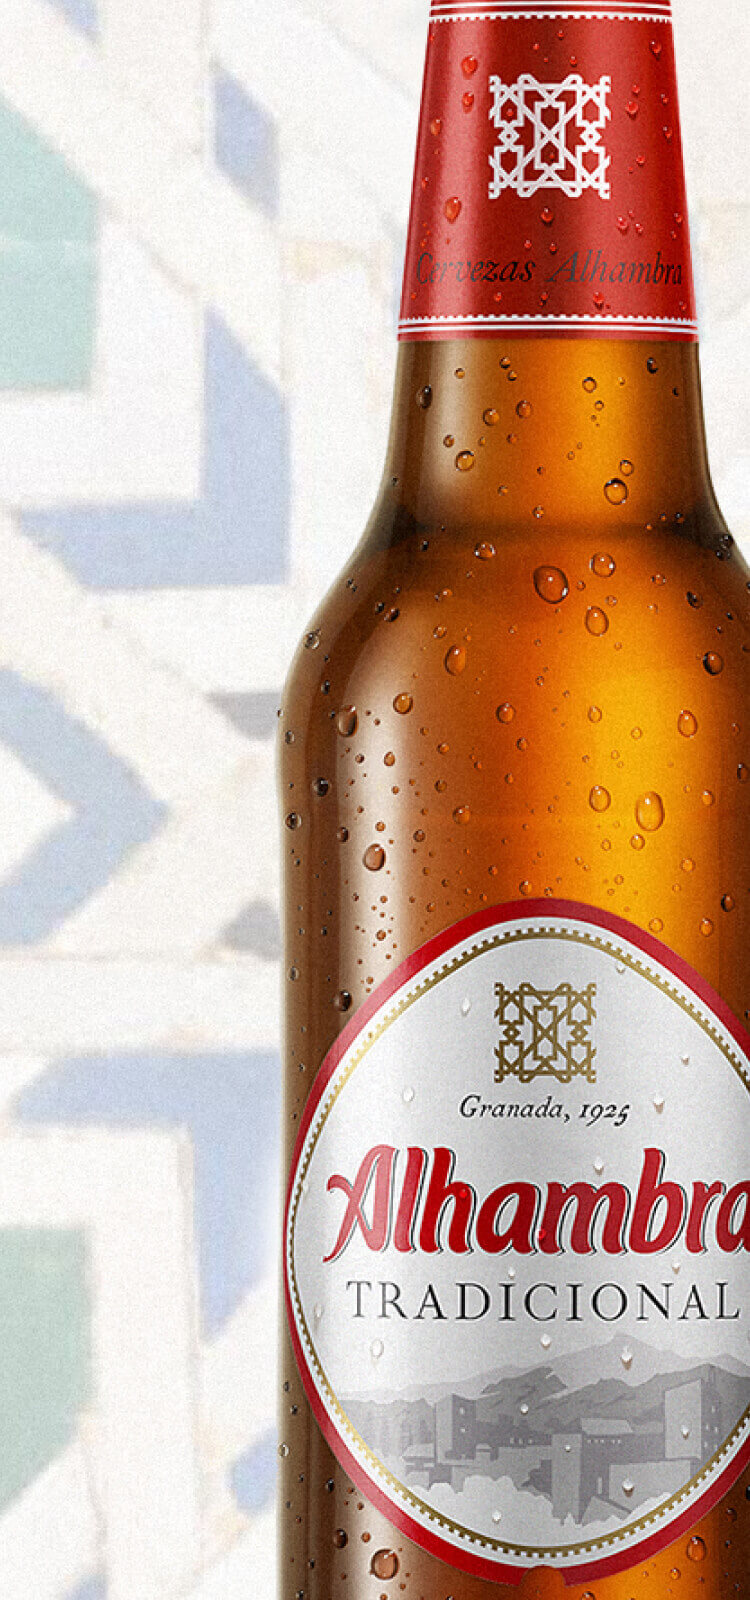 Cerveza Tradicional - Cervezas Alhambra